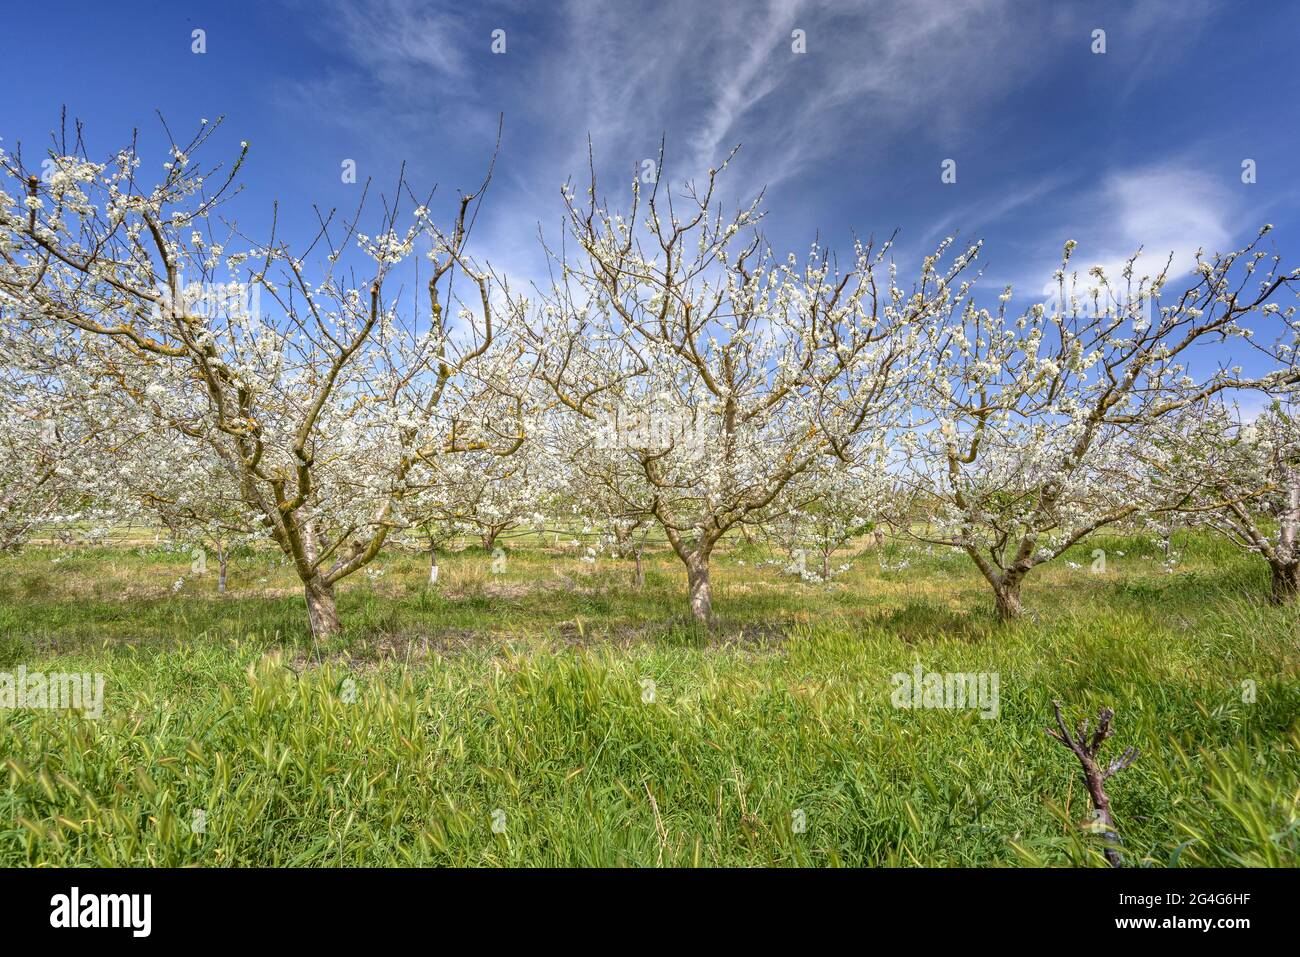 Cerisiers en fleurs au printemps près du village de Miravet (Tarragone, Catalogne, Espagne) ESP: Campos de cerezos florecidos en primavera cerca de Miravet Banque D'Images